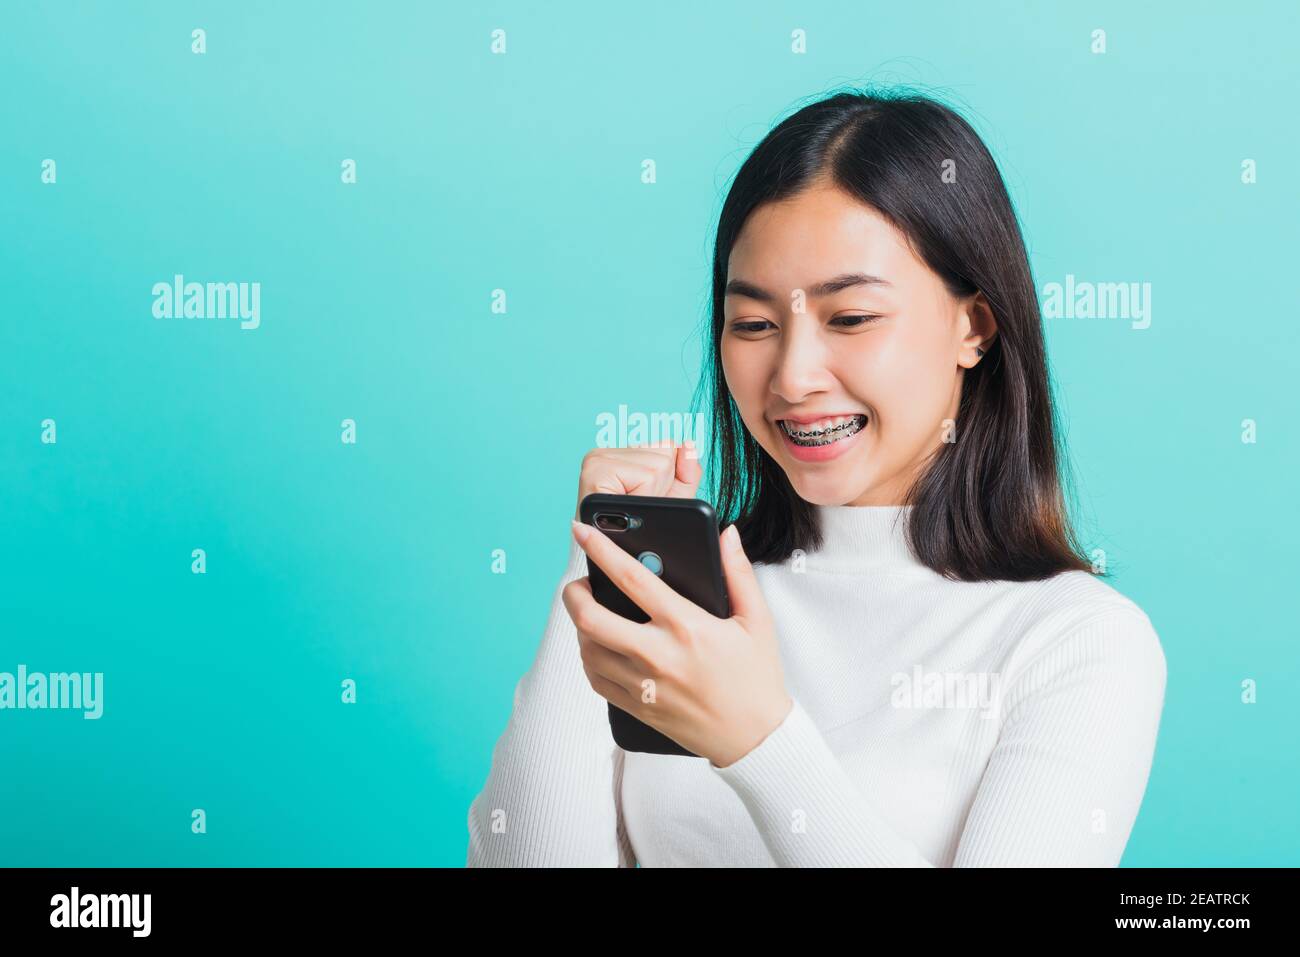 une femme sourit en tenant son smartphone, elle est heureuse et surprise après avoir été reçue message Banque D'Images